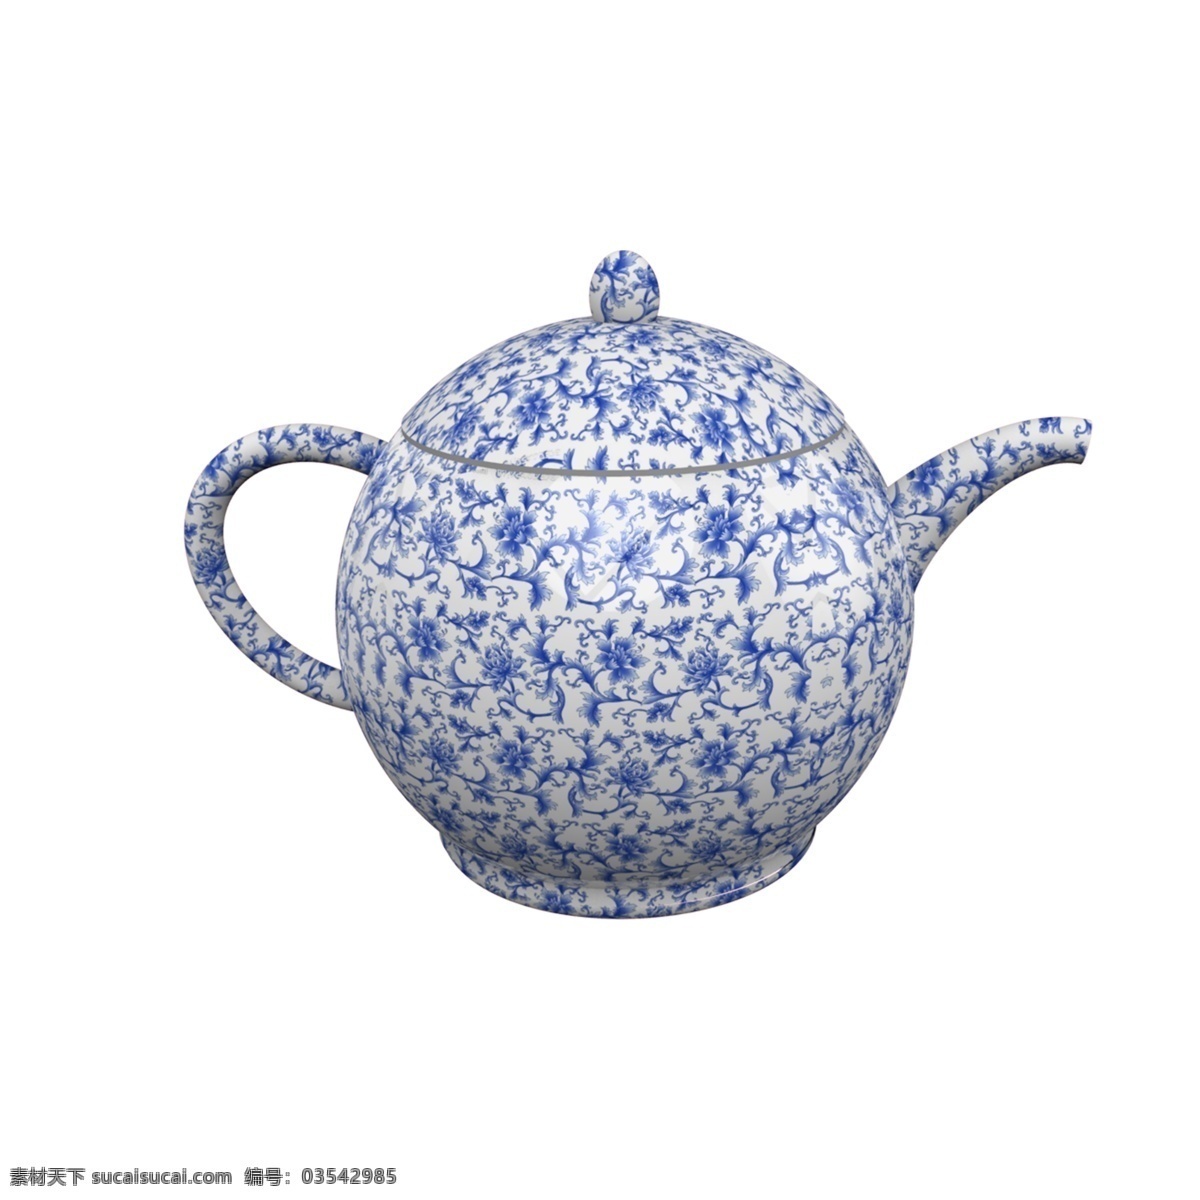 蓝色 水壶 免 抠 蓝色水壶 陶瓷蓝色水壶 金属水壶 水壶模型 大方优雅 时尚有质感 喝水 茶具 茶壶